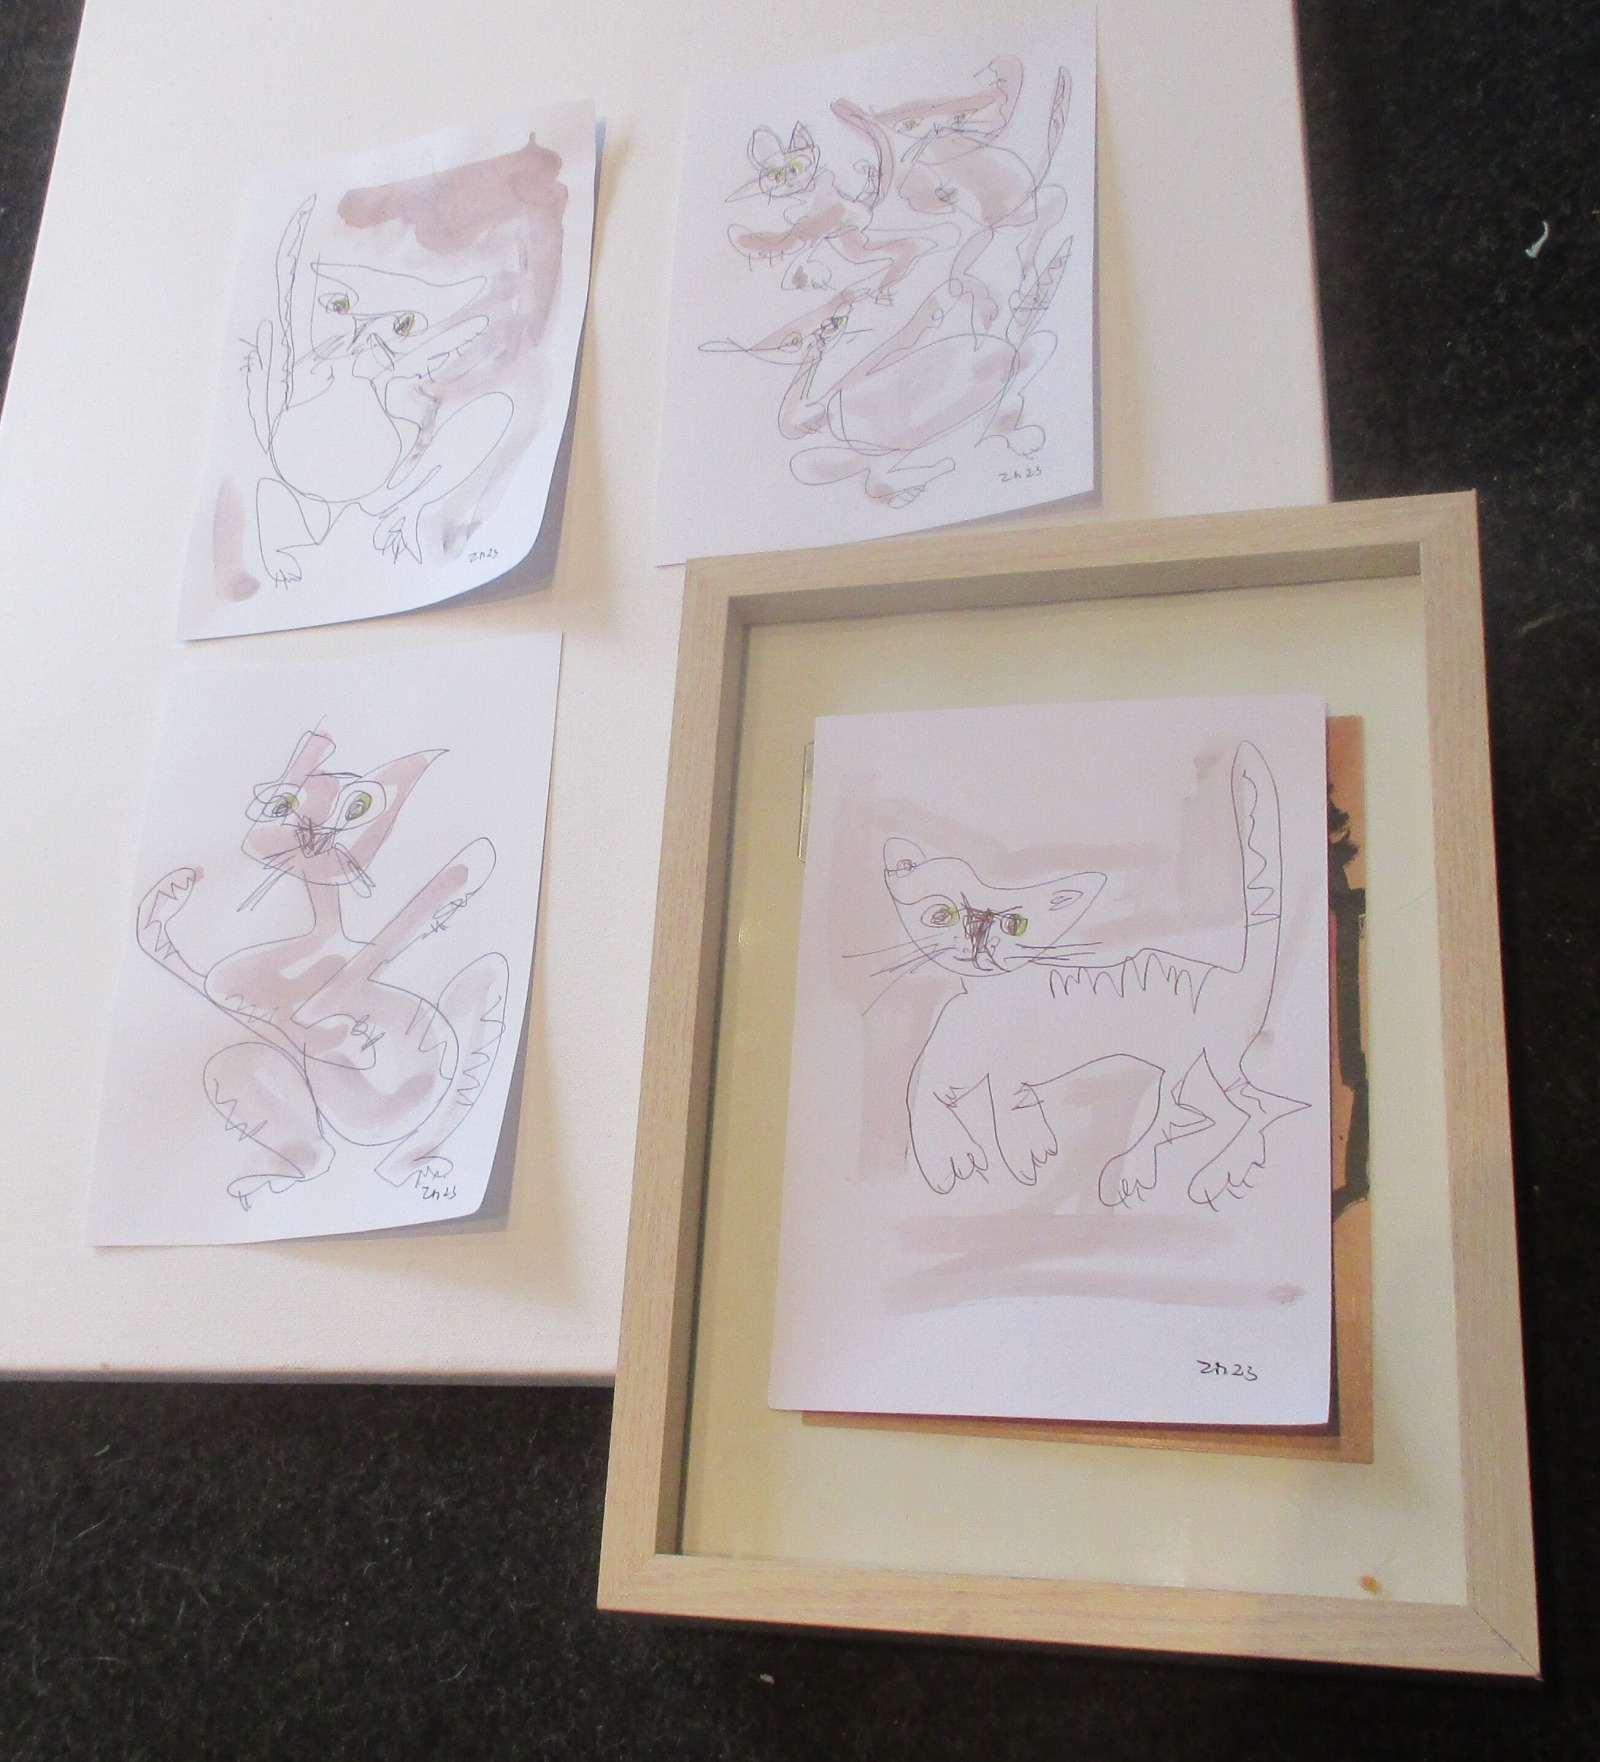 4 Katzen mit Kaffee expressive Original Zeichnung auf Papier Tusche 4x21x15 cm 2